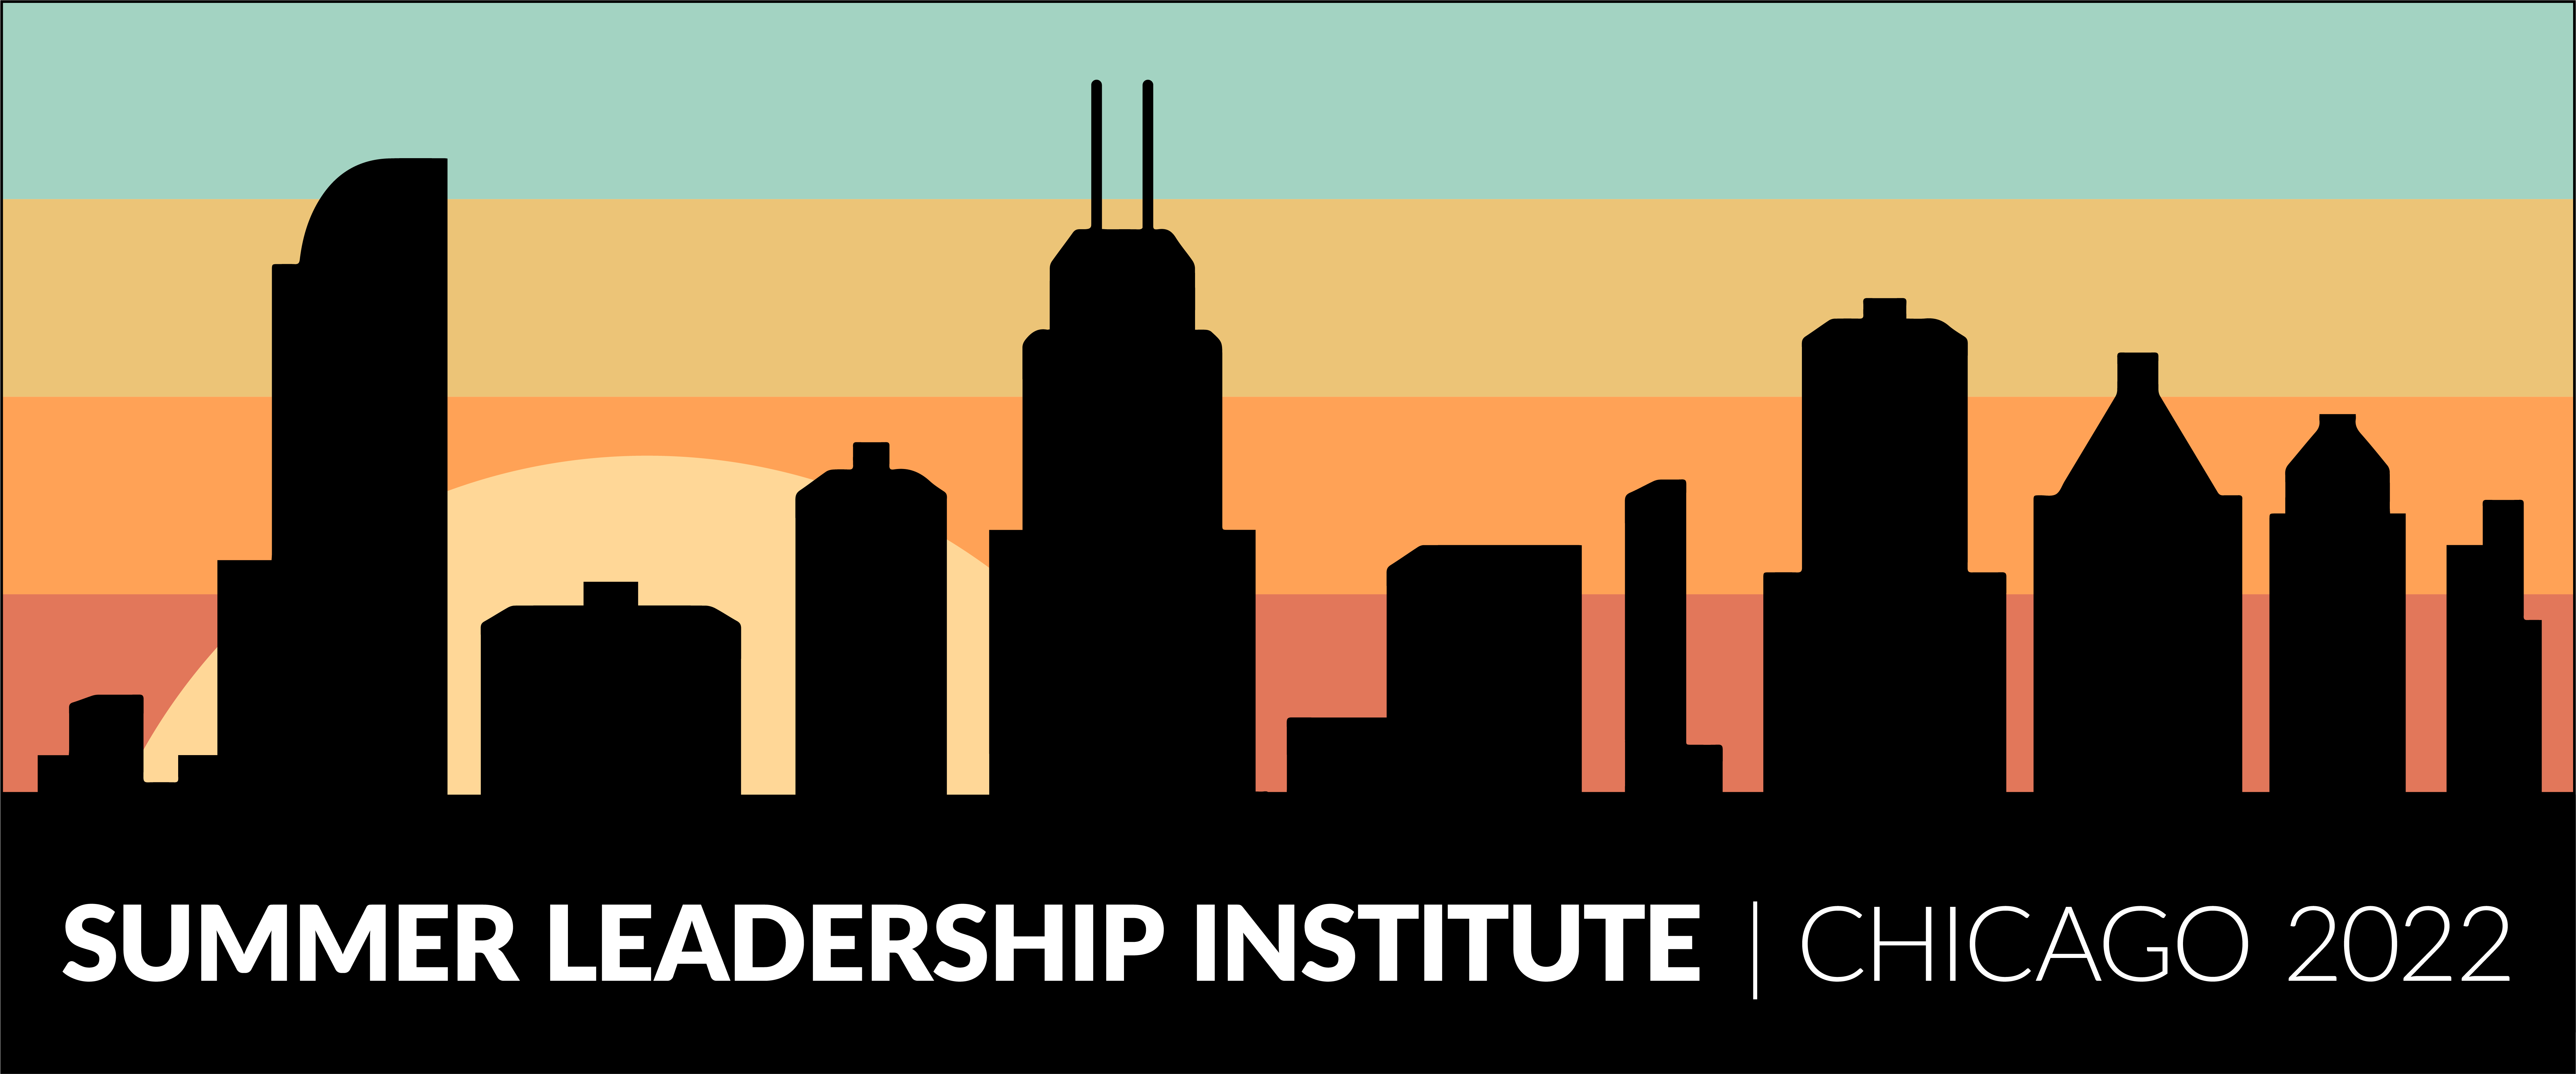 Summer Leadership Institute Chicago 2022